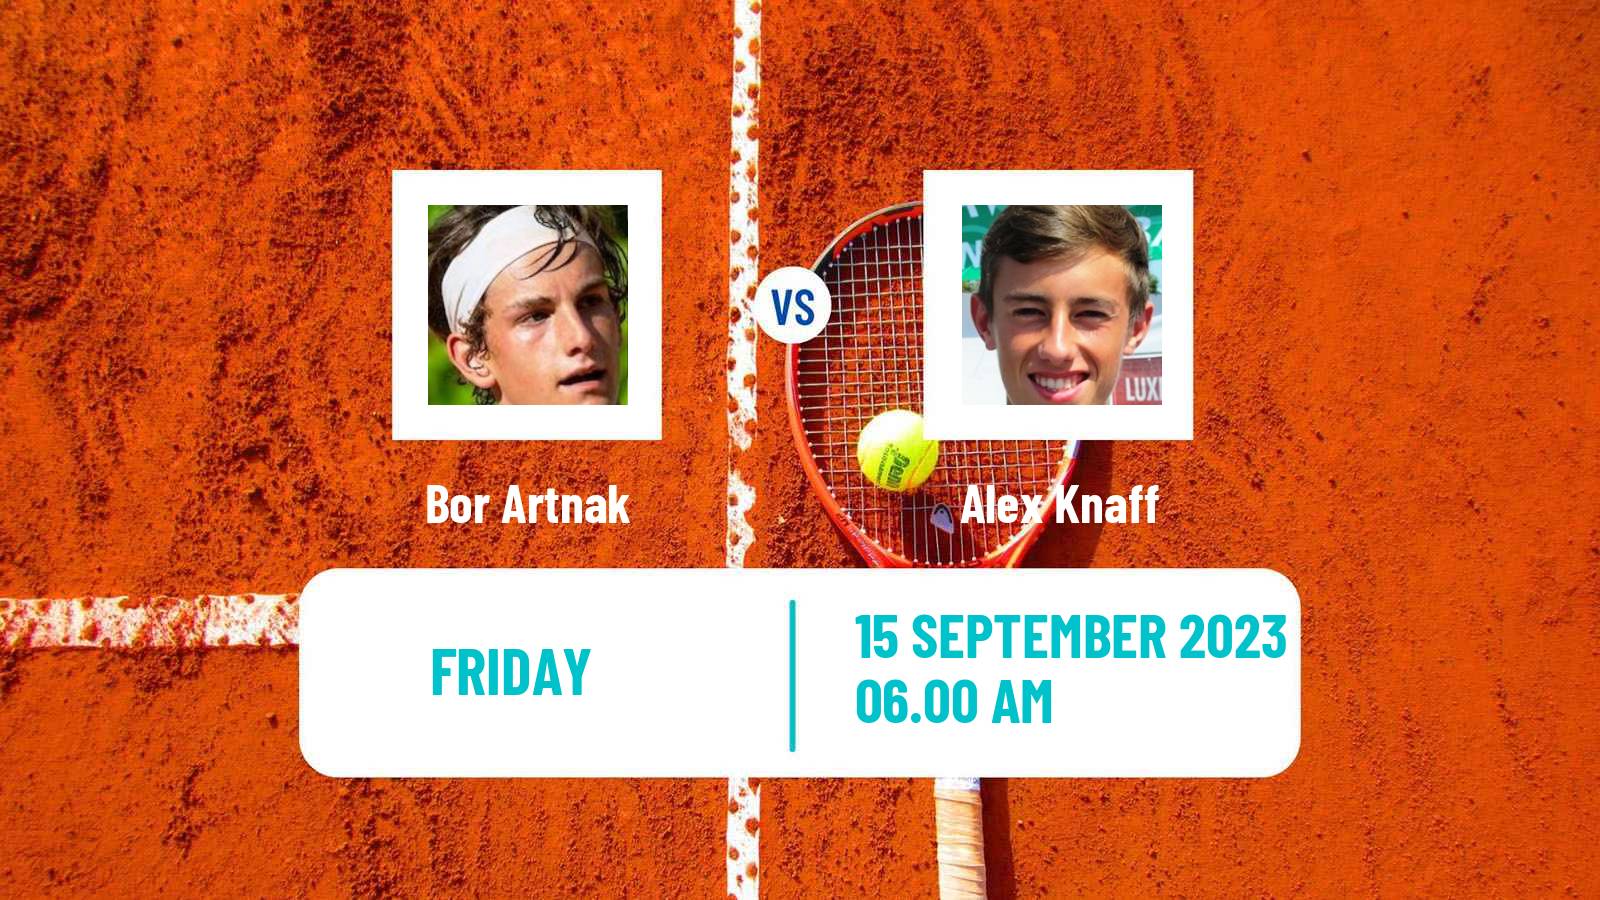 Tennis Davis Cup World Group II Bor Artnak - Alex Knaff